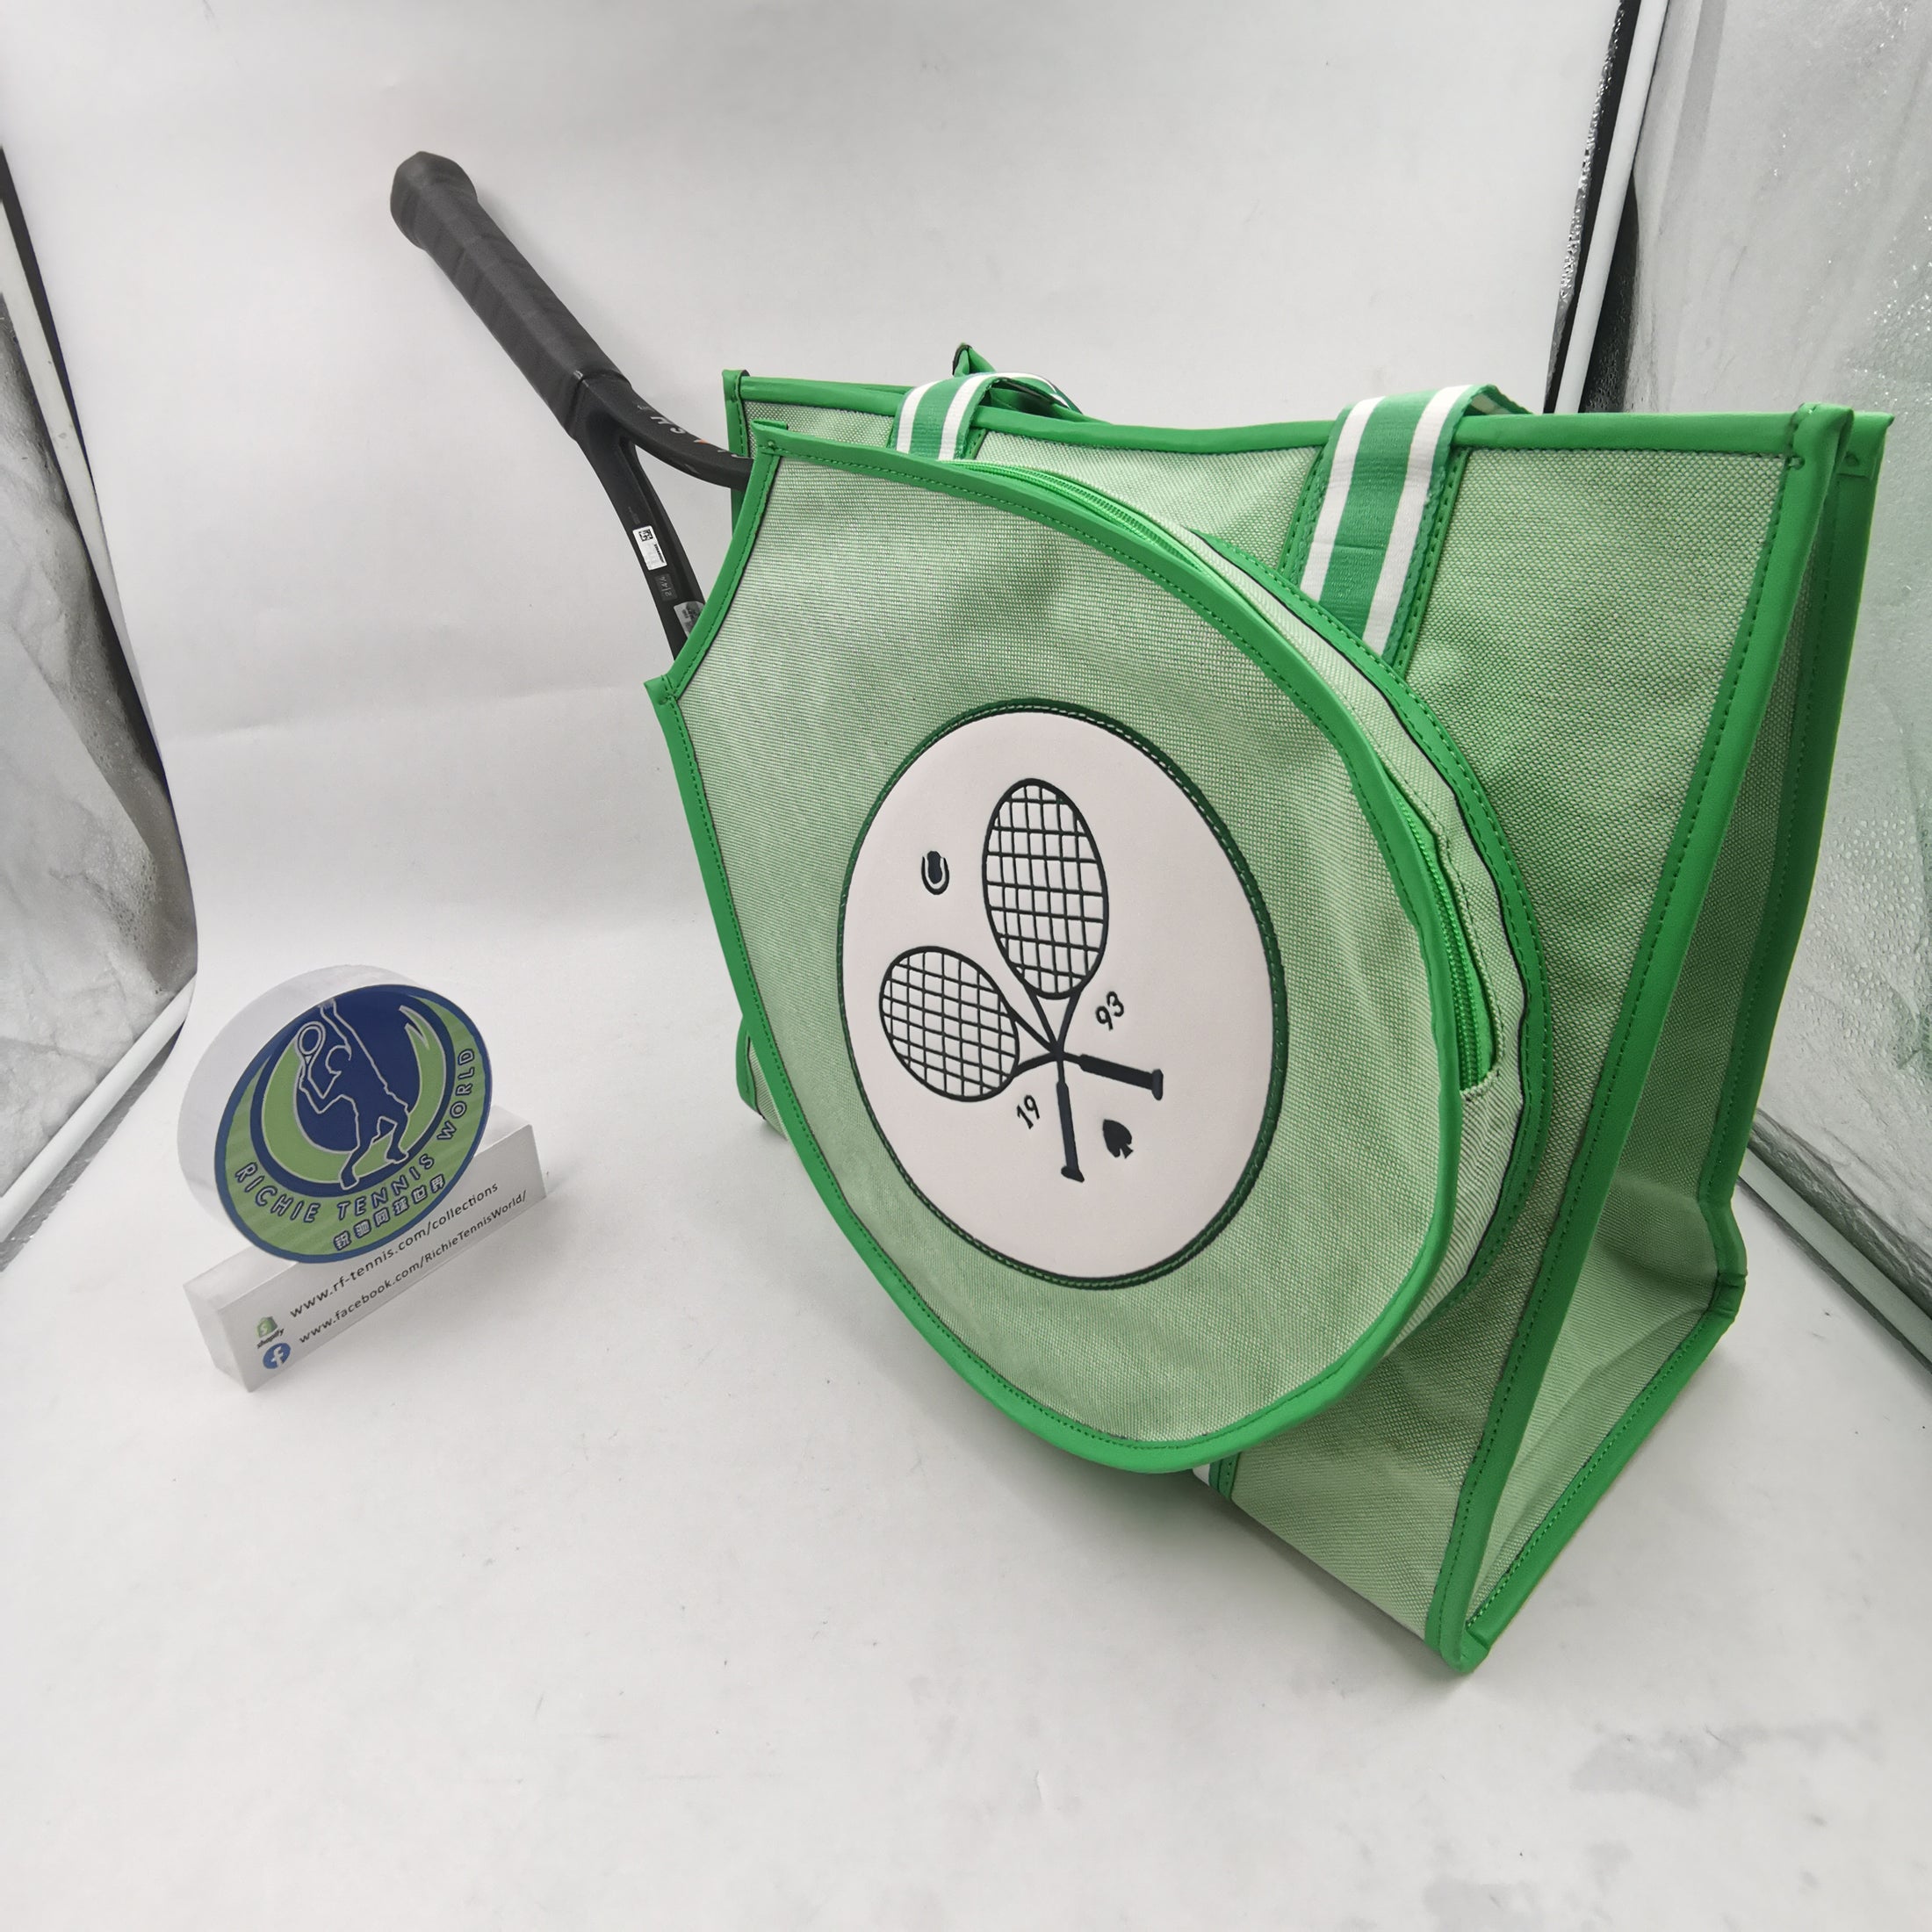 Buy Tennis bags online | Tennis-Point